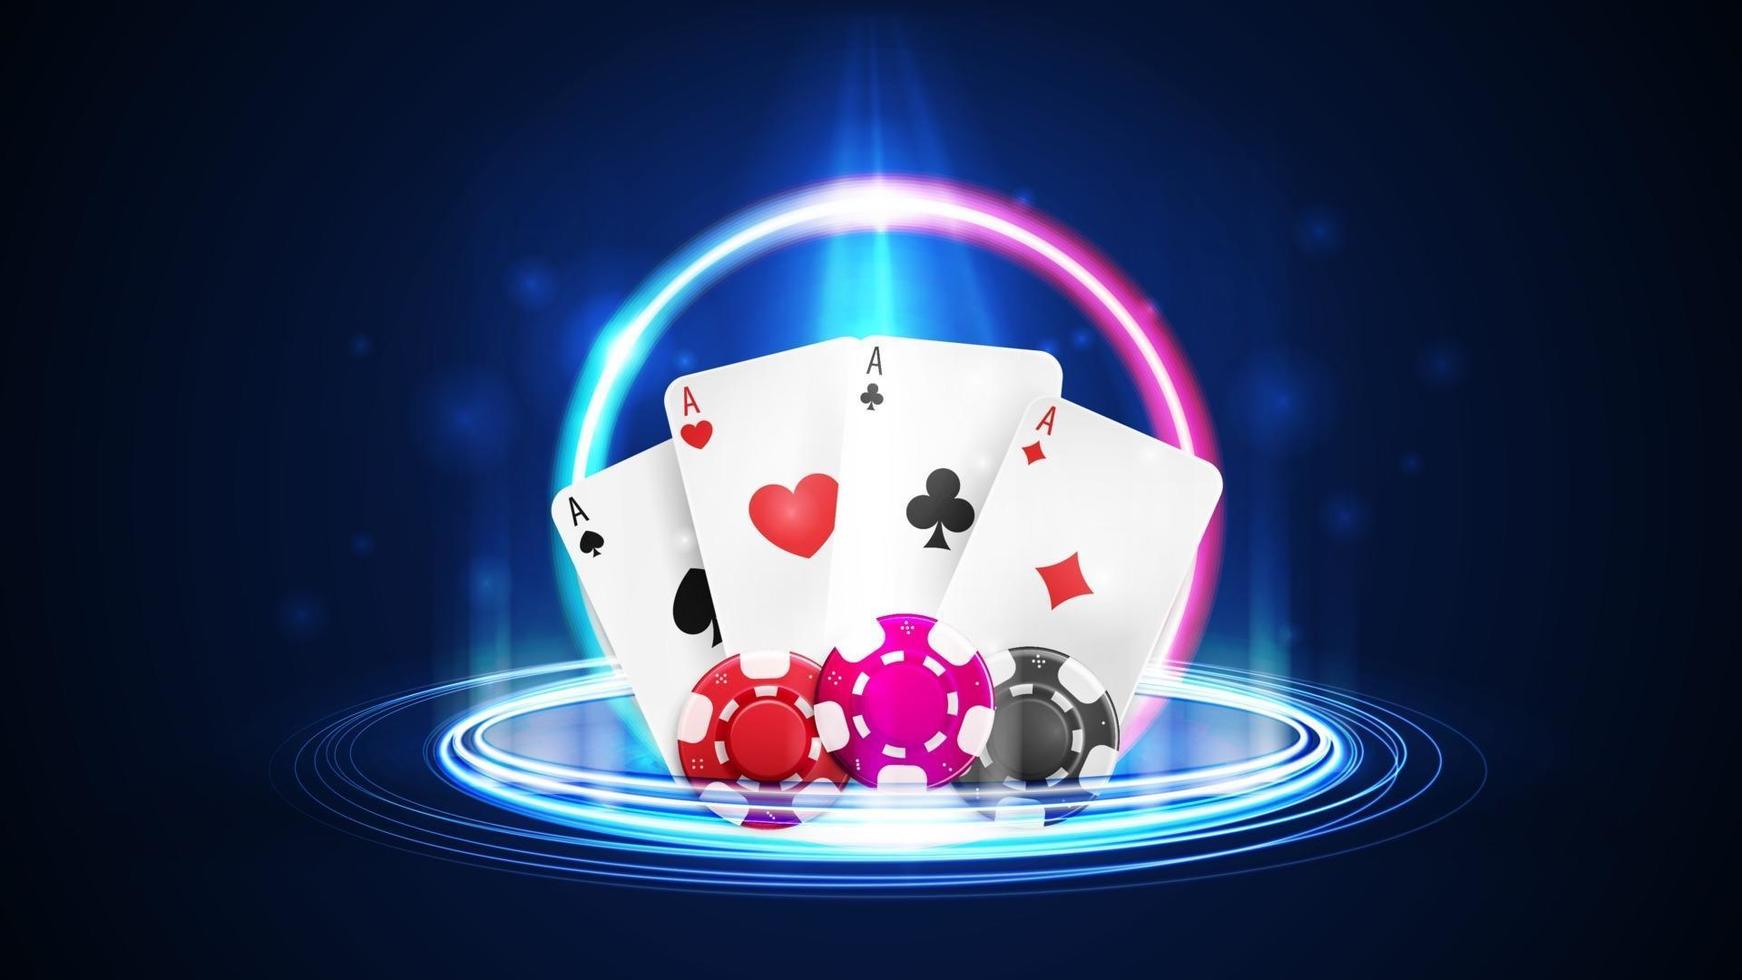 Leuchten Sie Neon-Casino-Spielkarten mit Pokerchips, Neon-Hologramm vektor